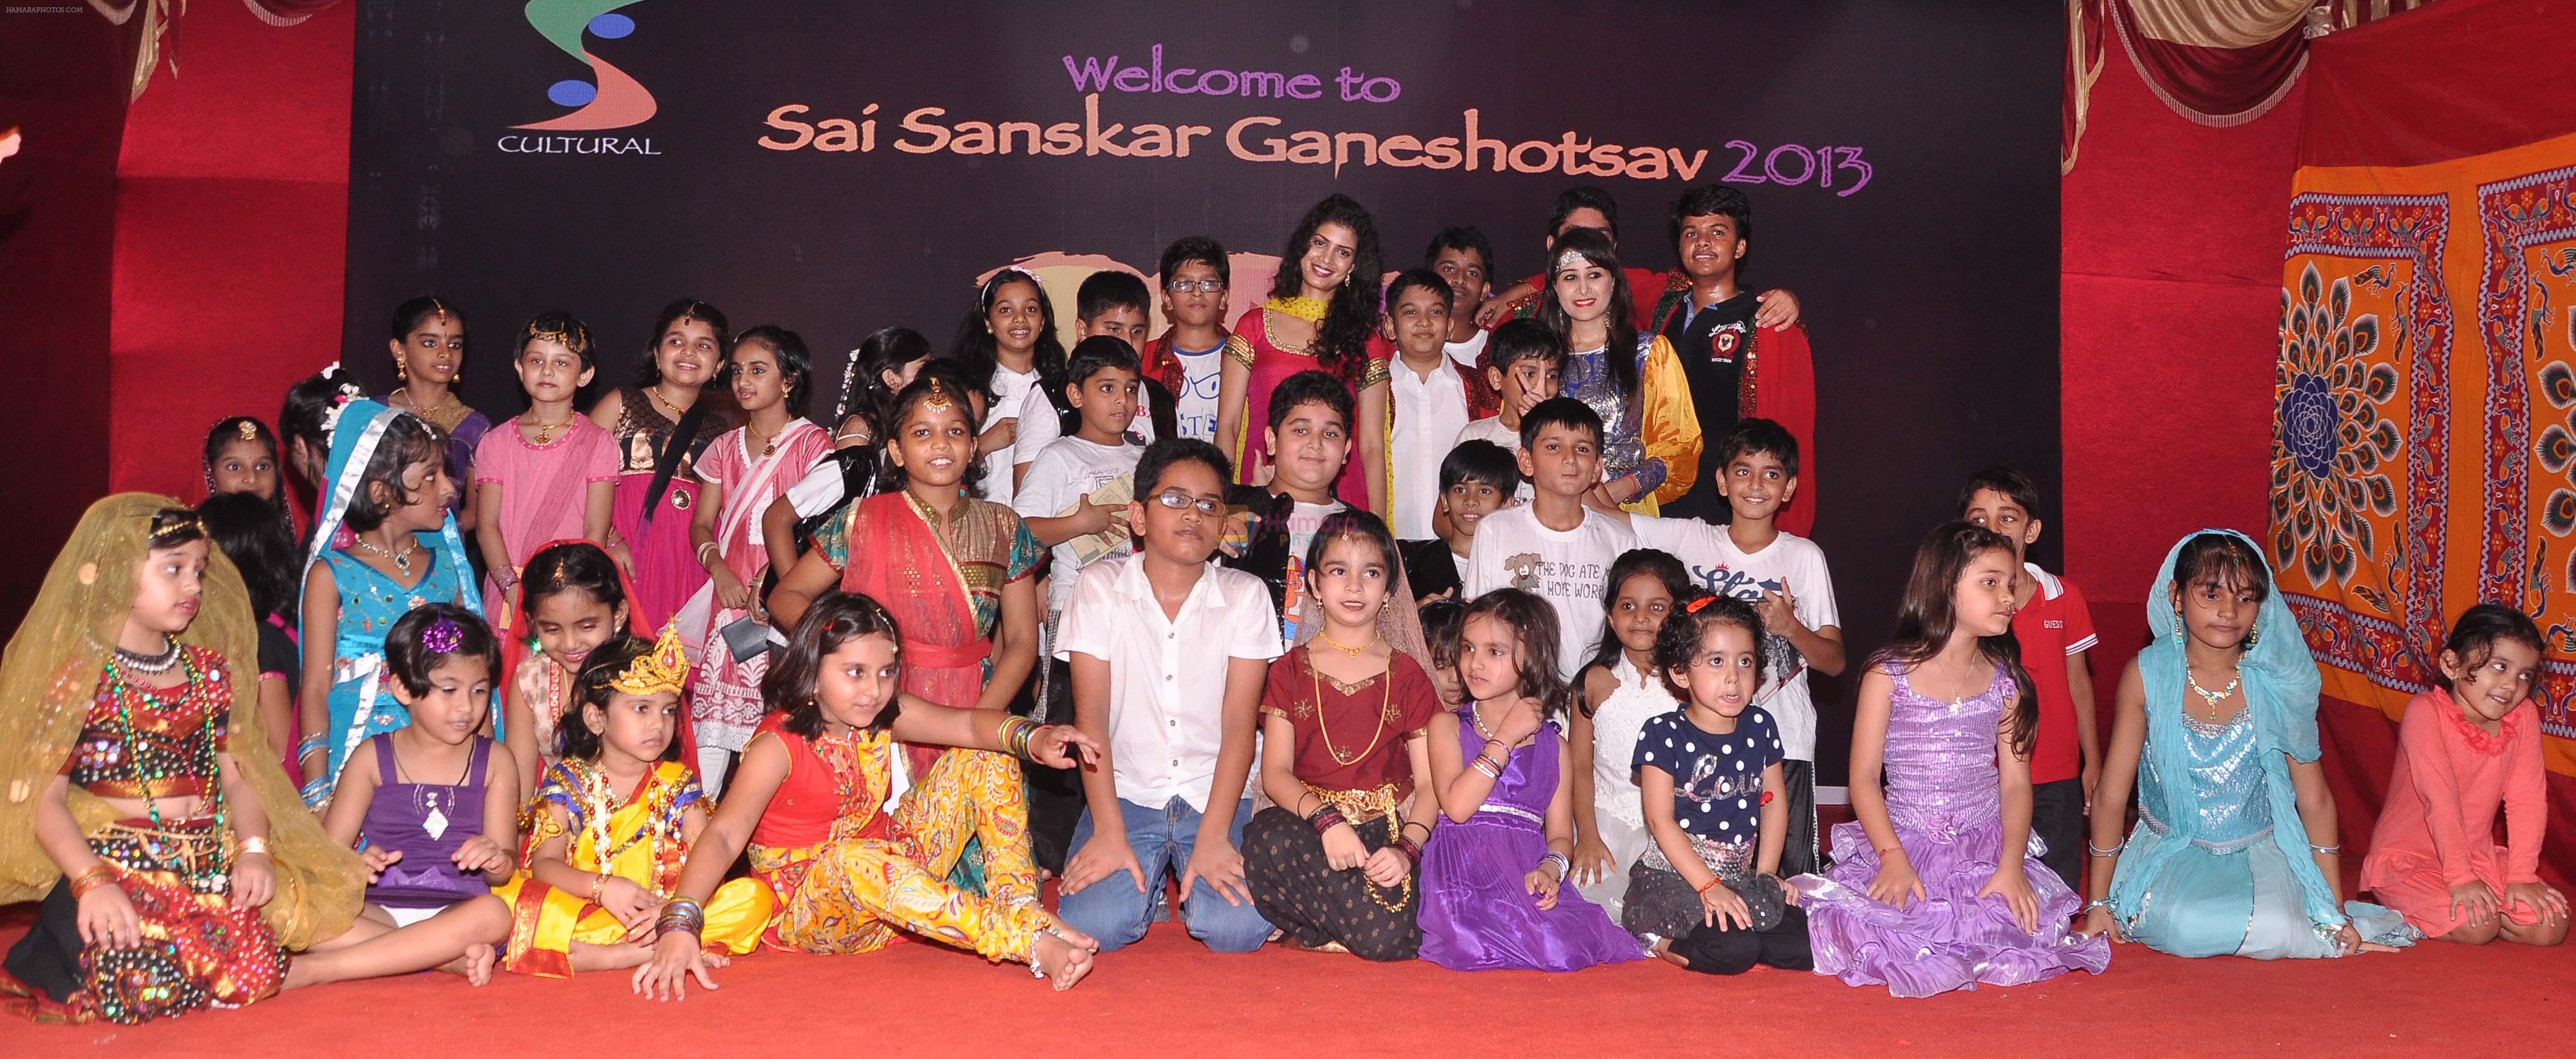 Tena Desae at Sai Sanskar Ganeshotsav 2013 in Chembur on 16th Sept 2013